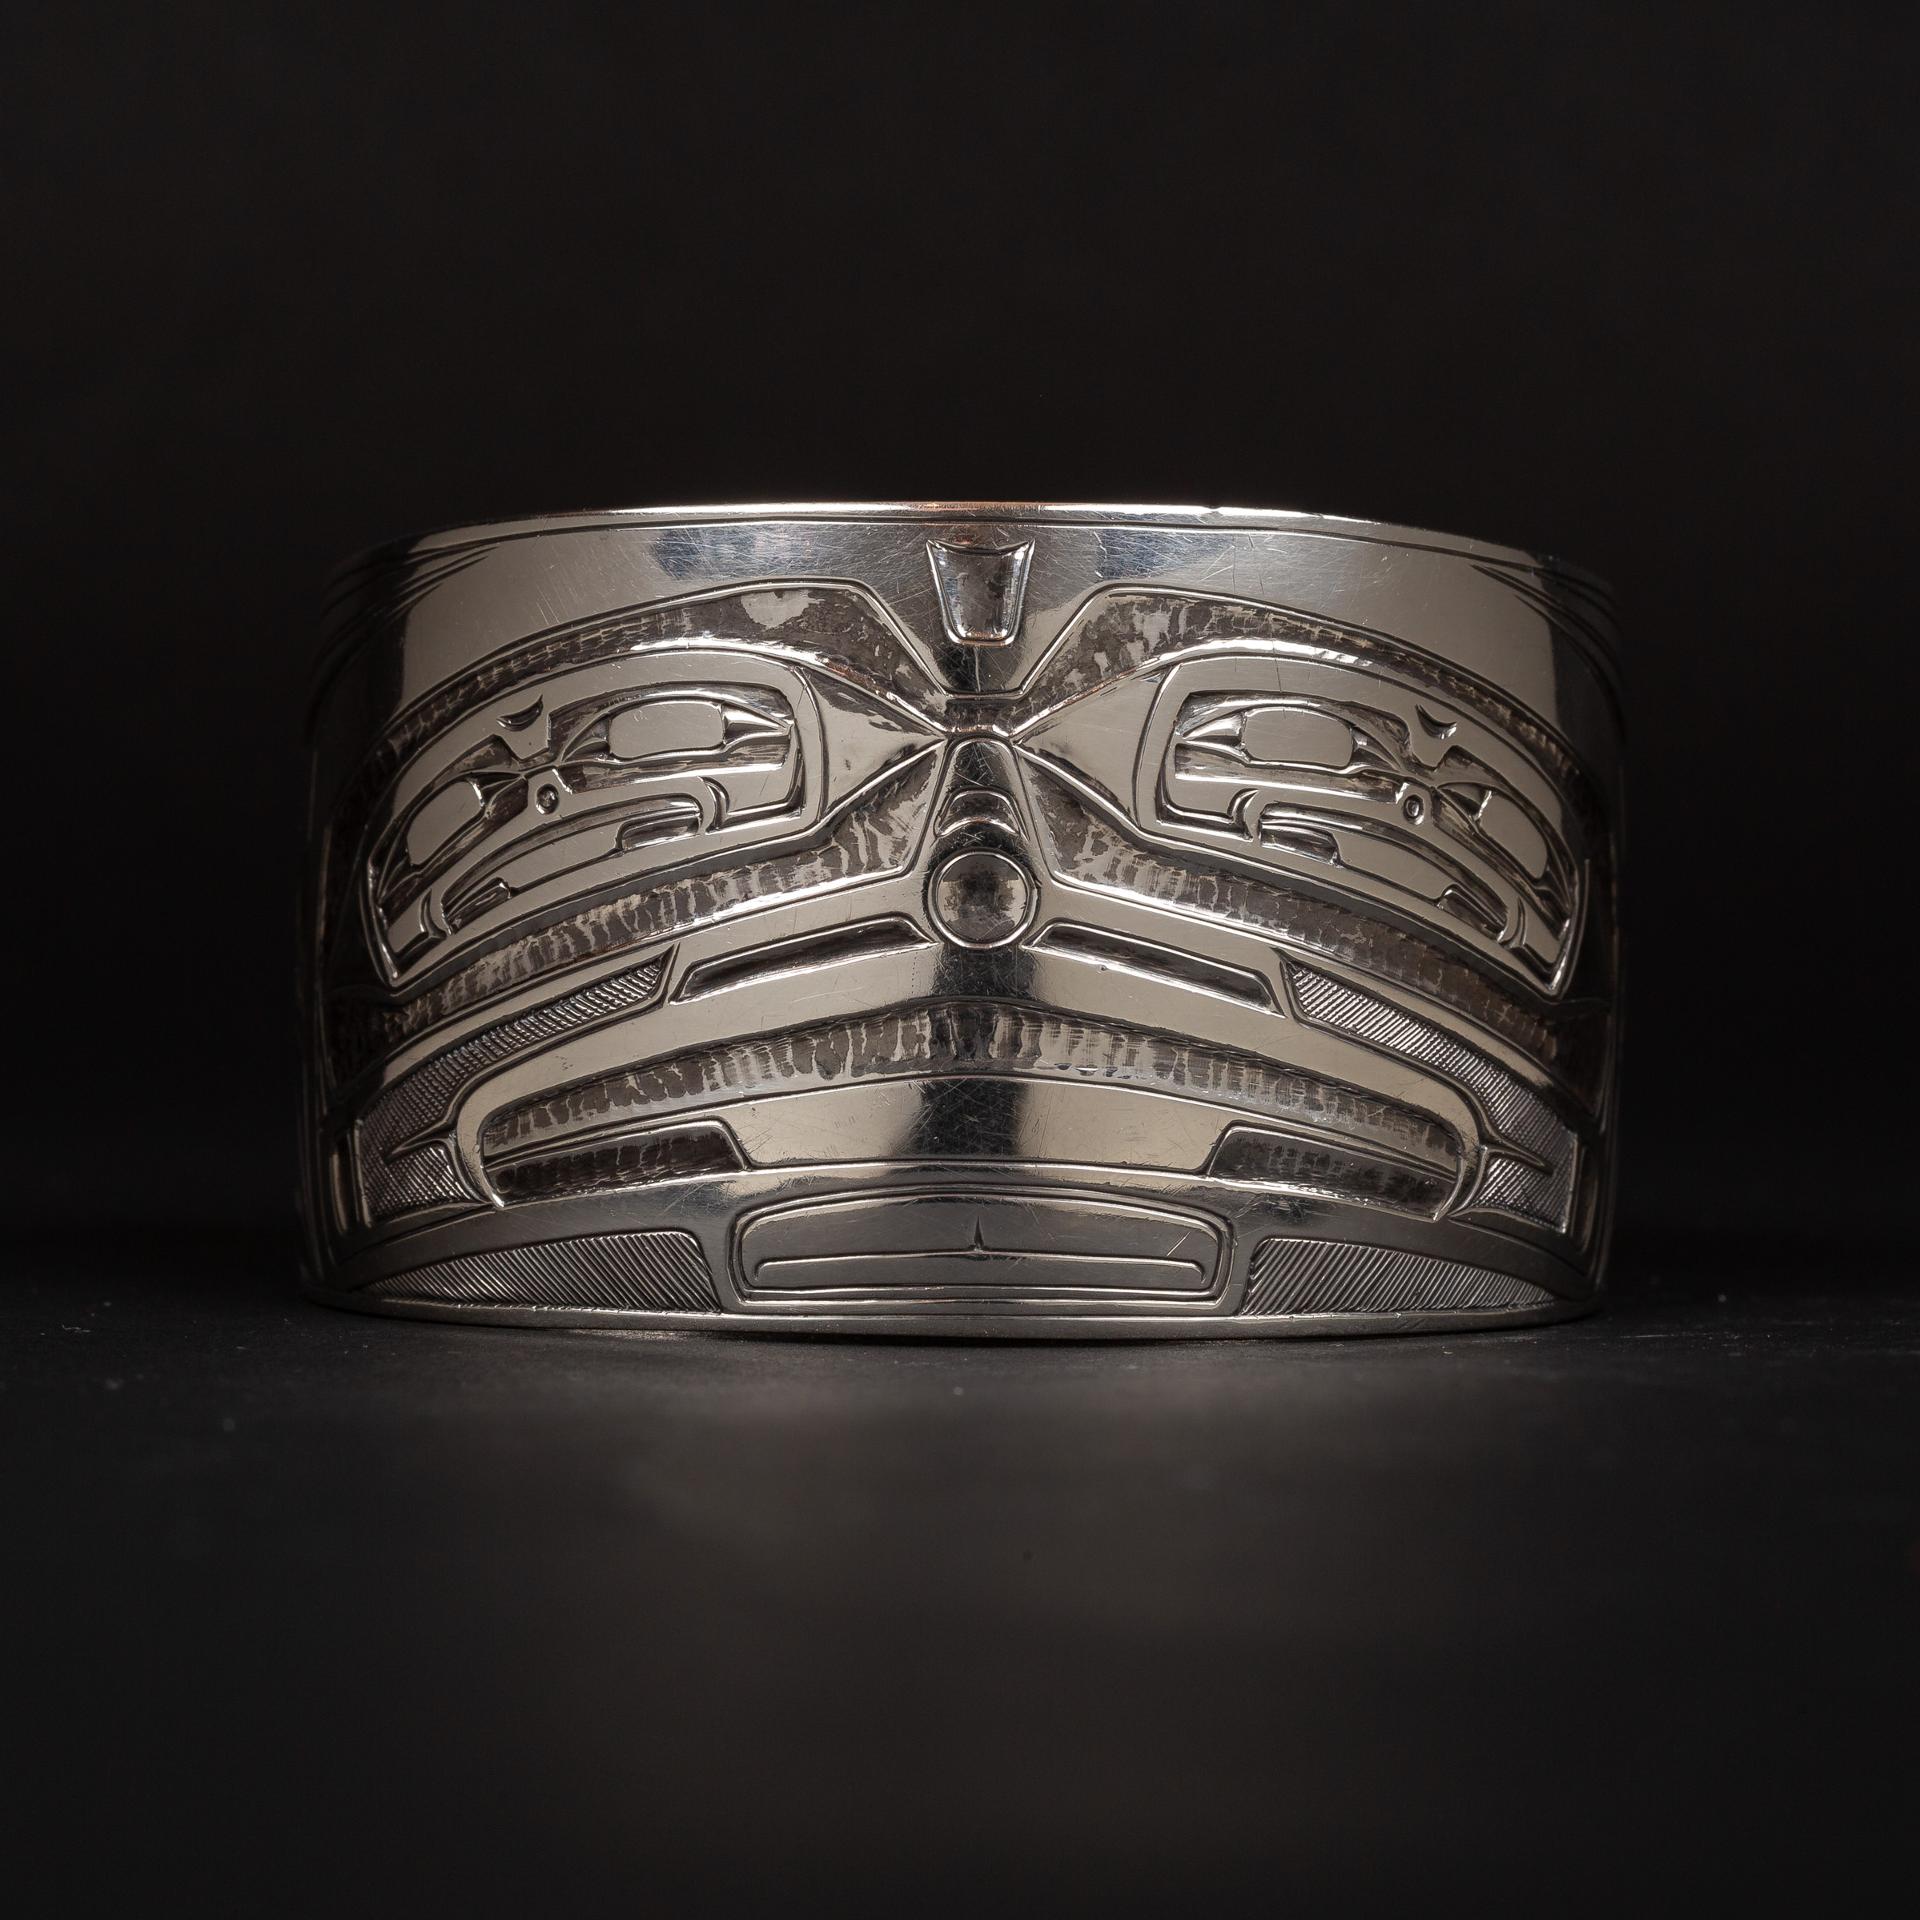 Phil Janzé (1950-2016) - Silver Box Design Bracelet